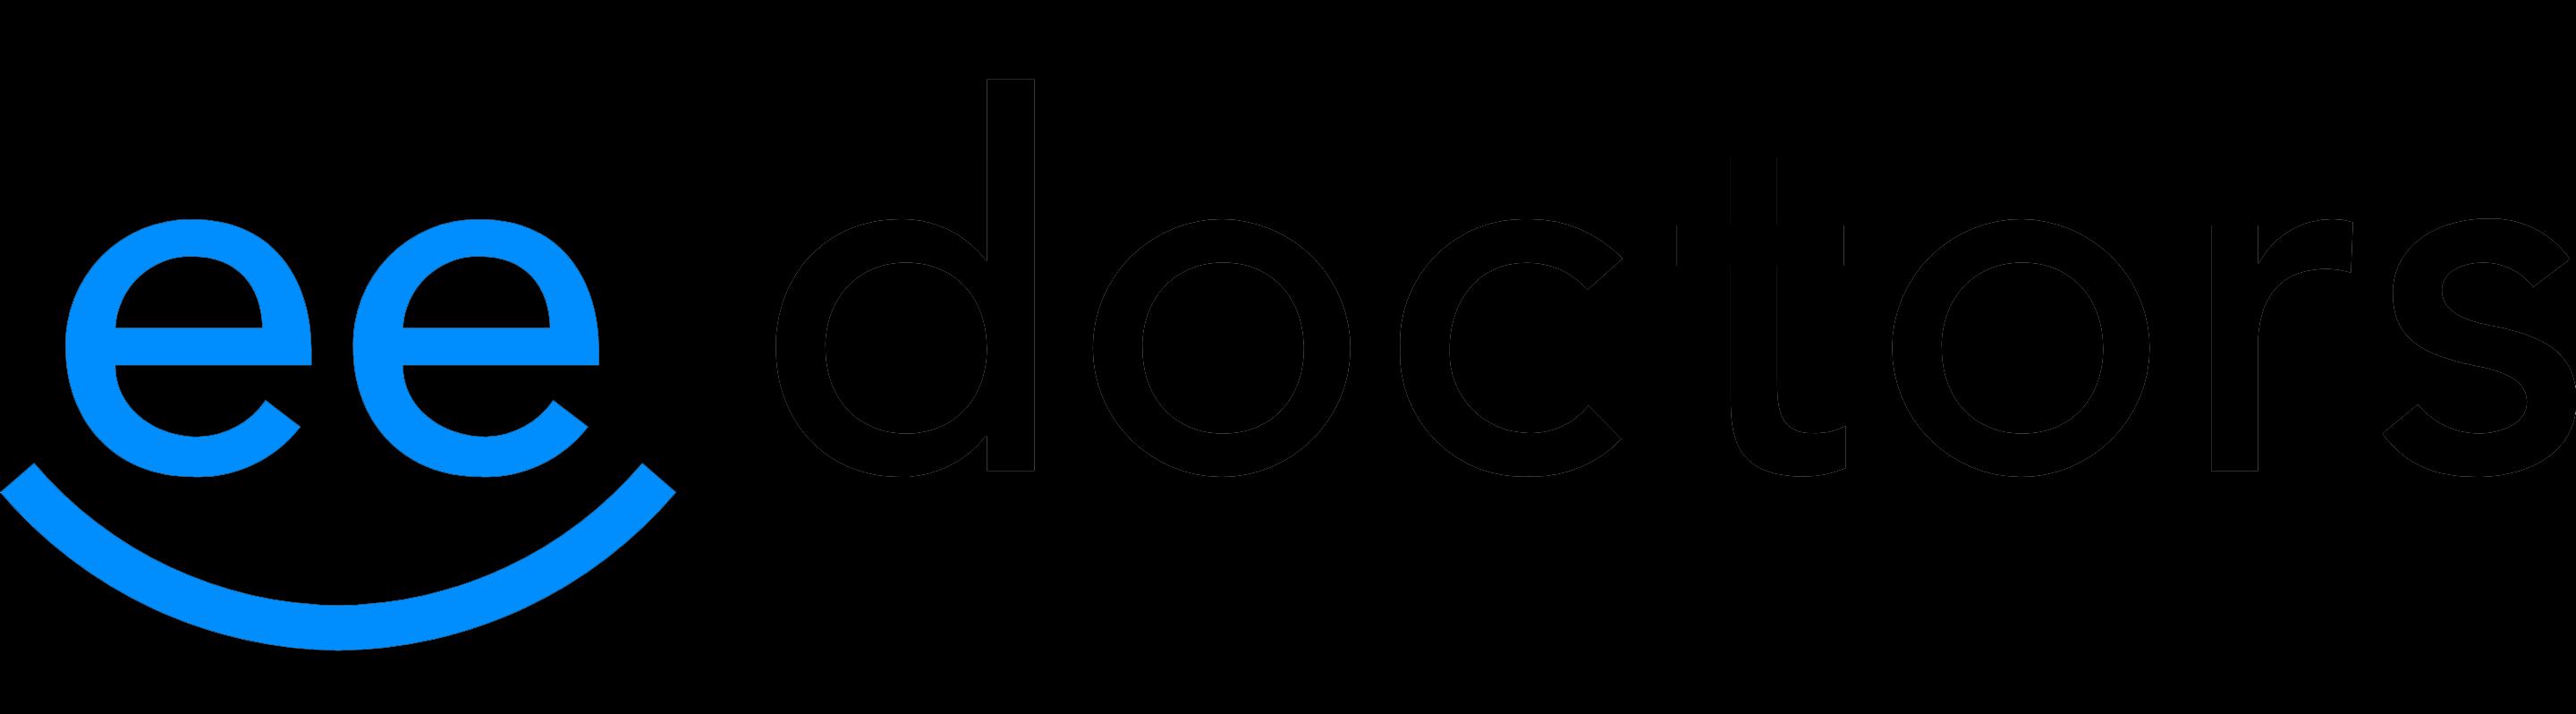 ee doctors_logo